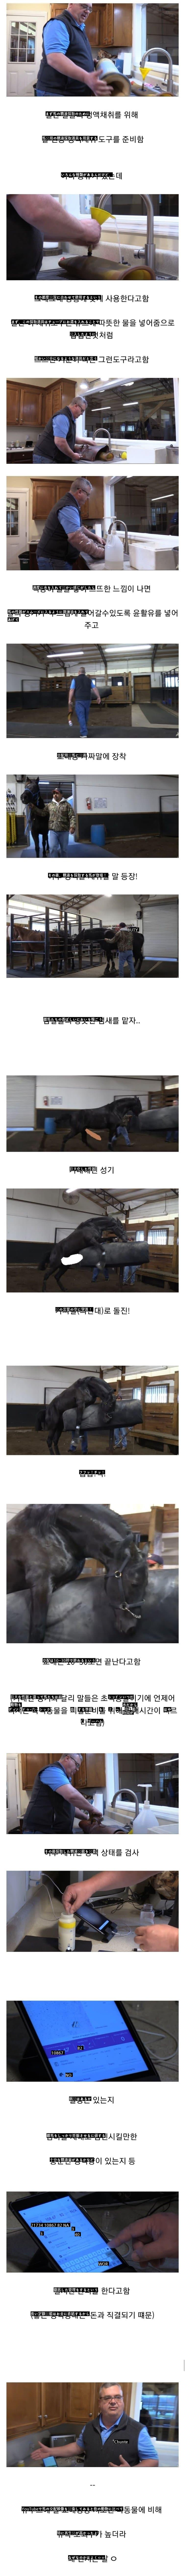 馬の精液採取方法